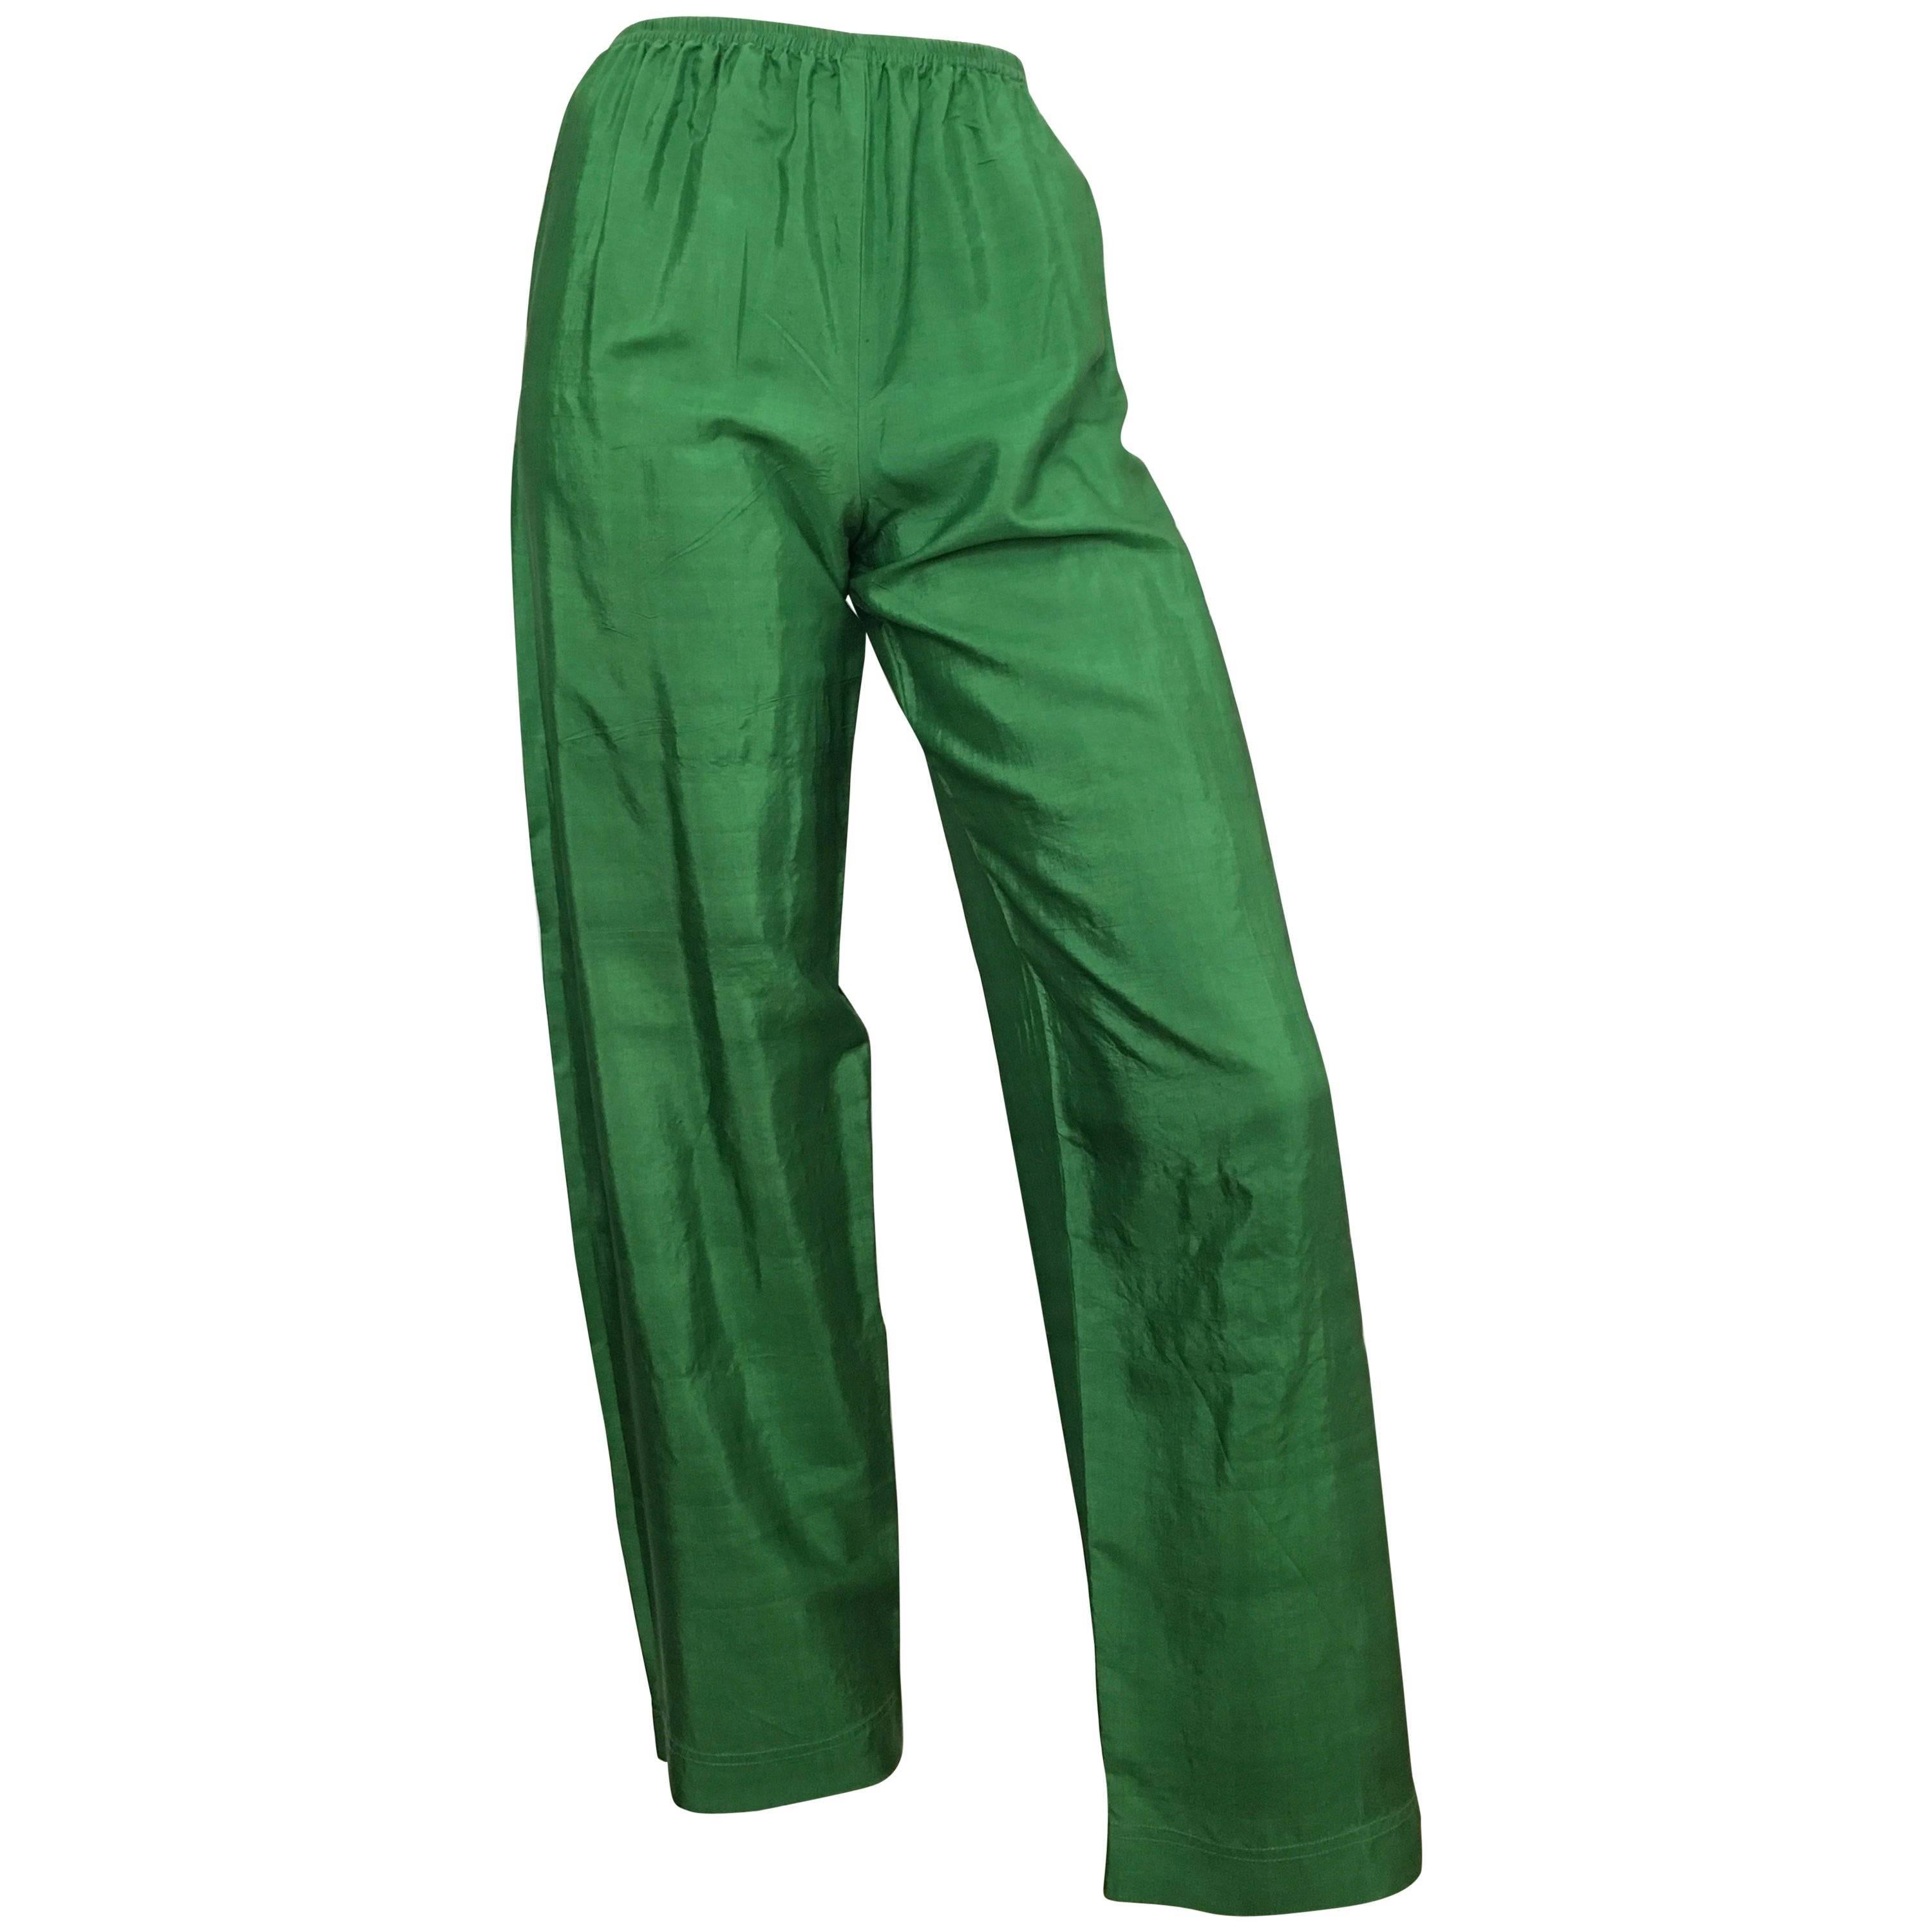 Saint Laurent Rive Gauche 1970s Green Silk Pants Size 4.